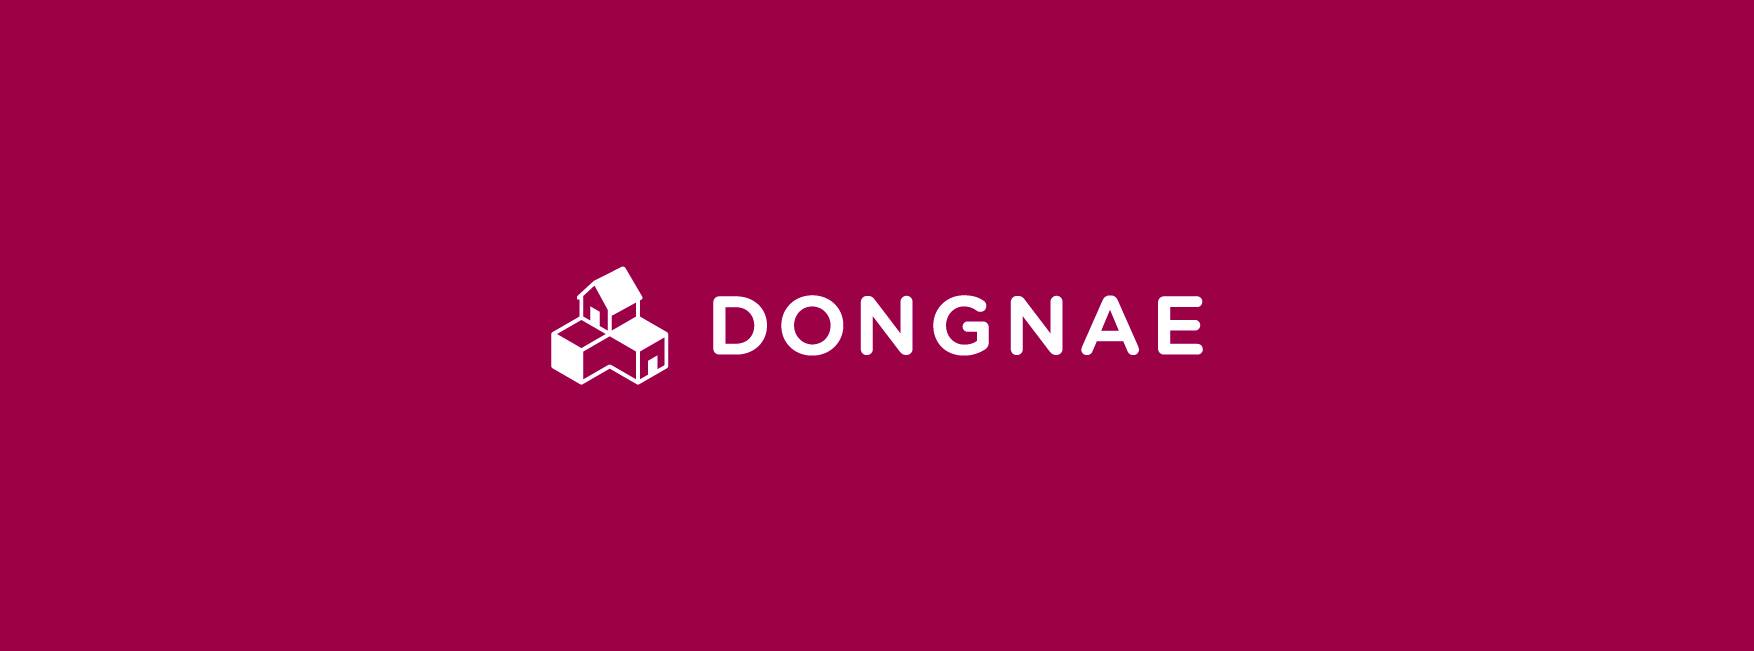 Dongnae